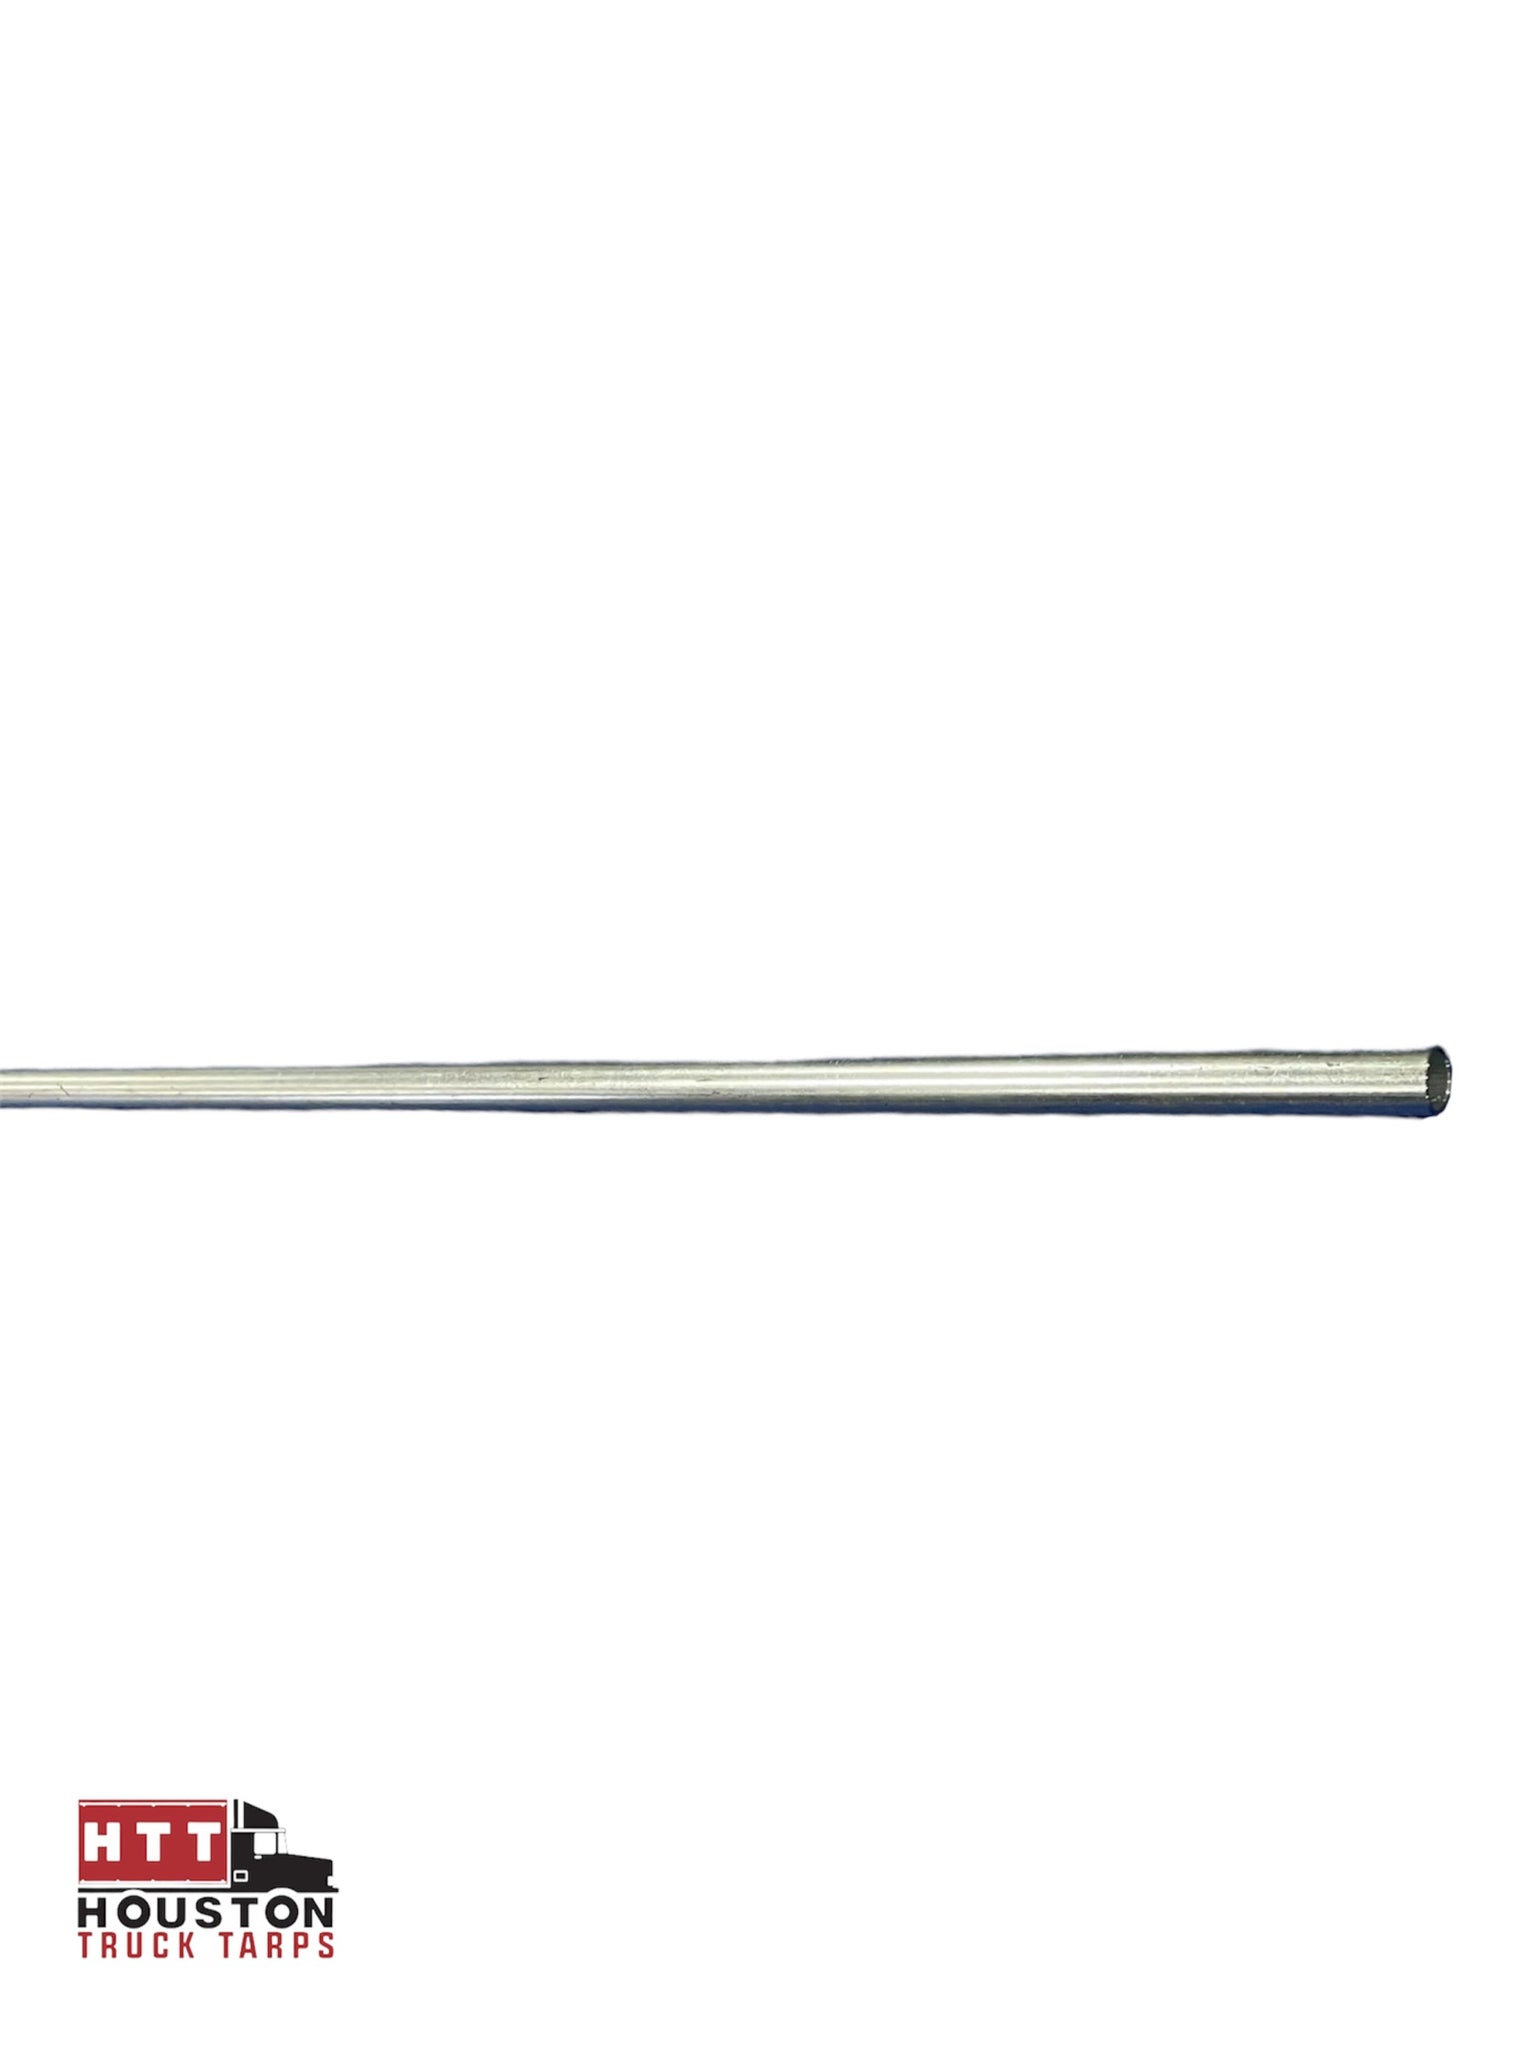 Steel Upper Side Arm 110”L